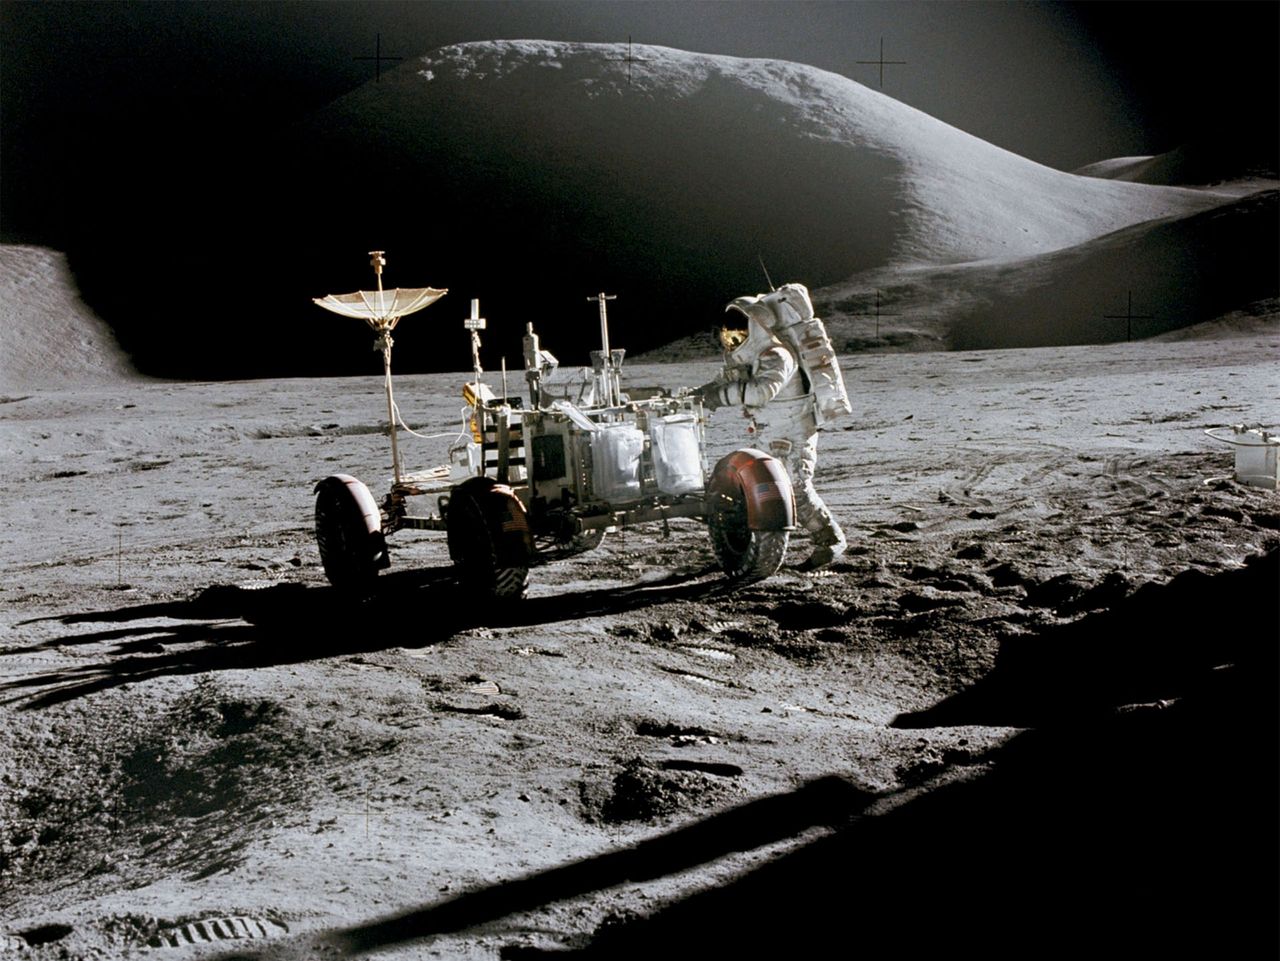 Minęło 50 lat od misji Apollo 15. Oto pierwszy łazik księżycowy na historycznych zdjęciach